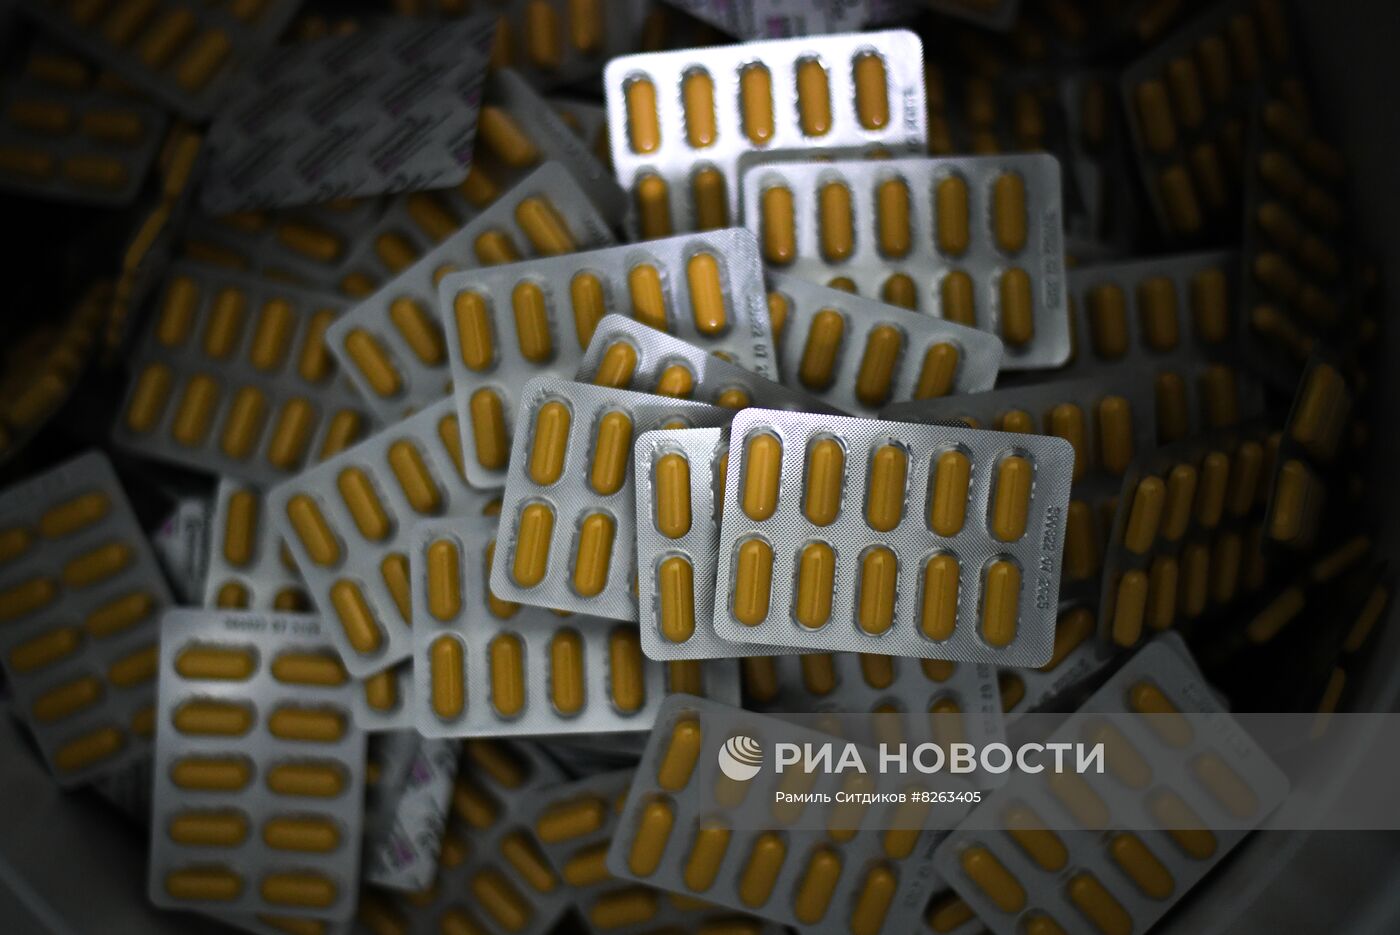 Производство лекарственных препаратов на заводе "Биохимик"